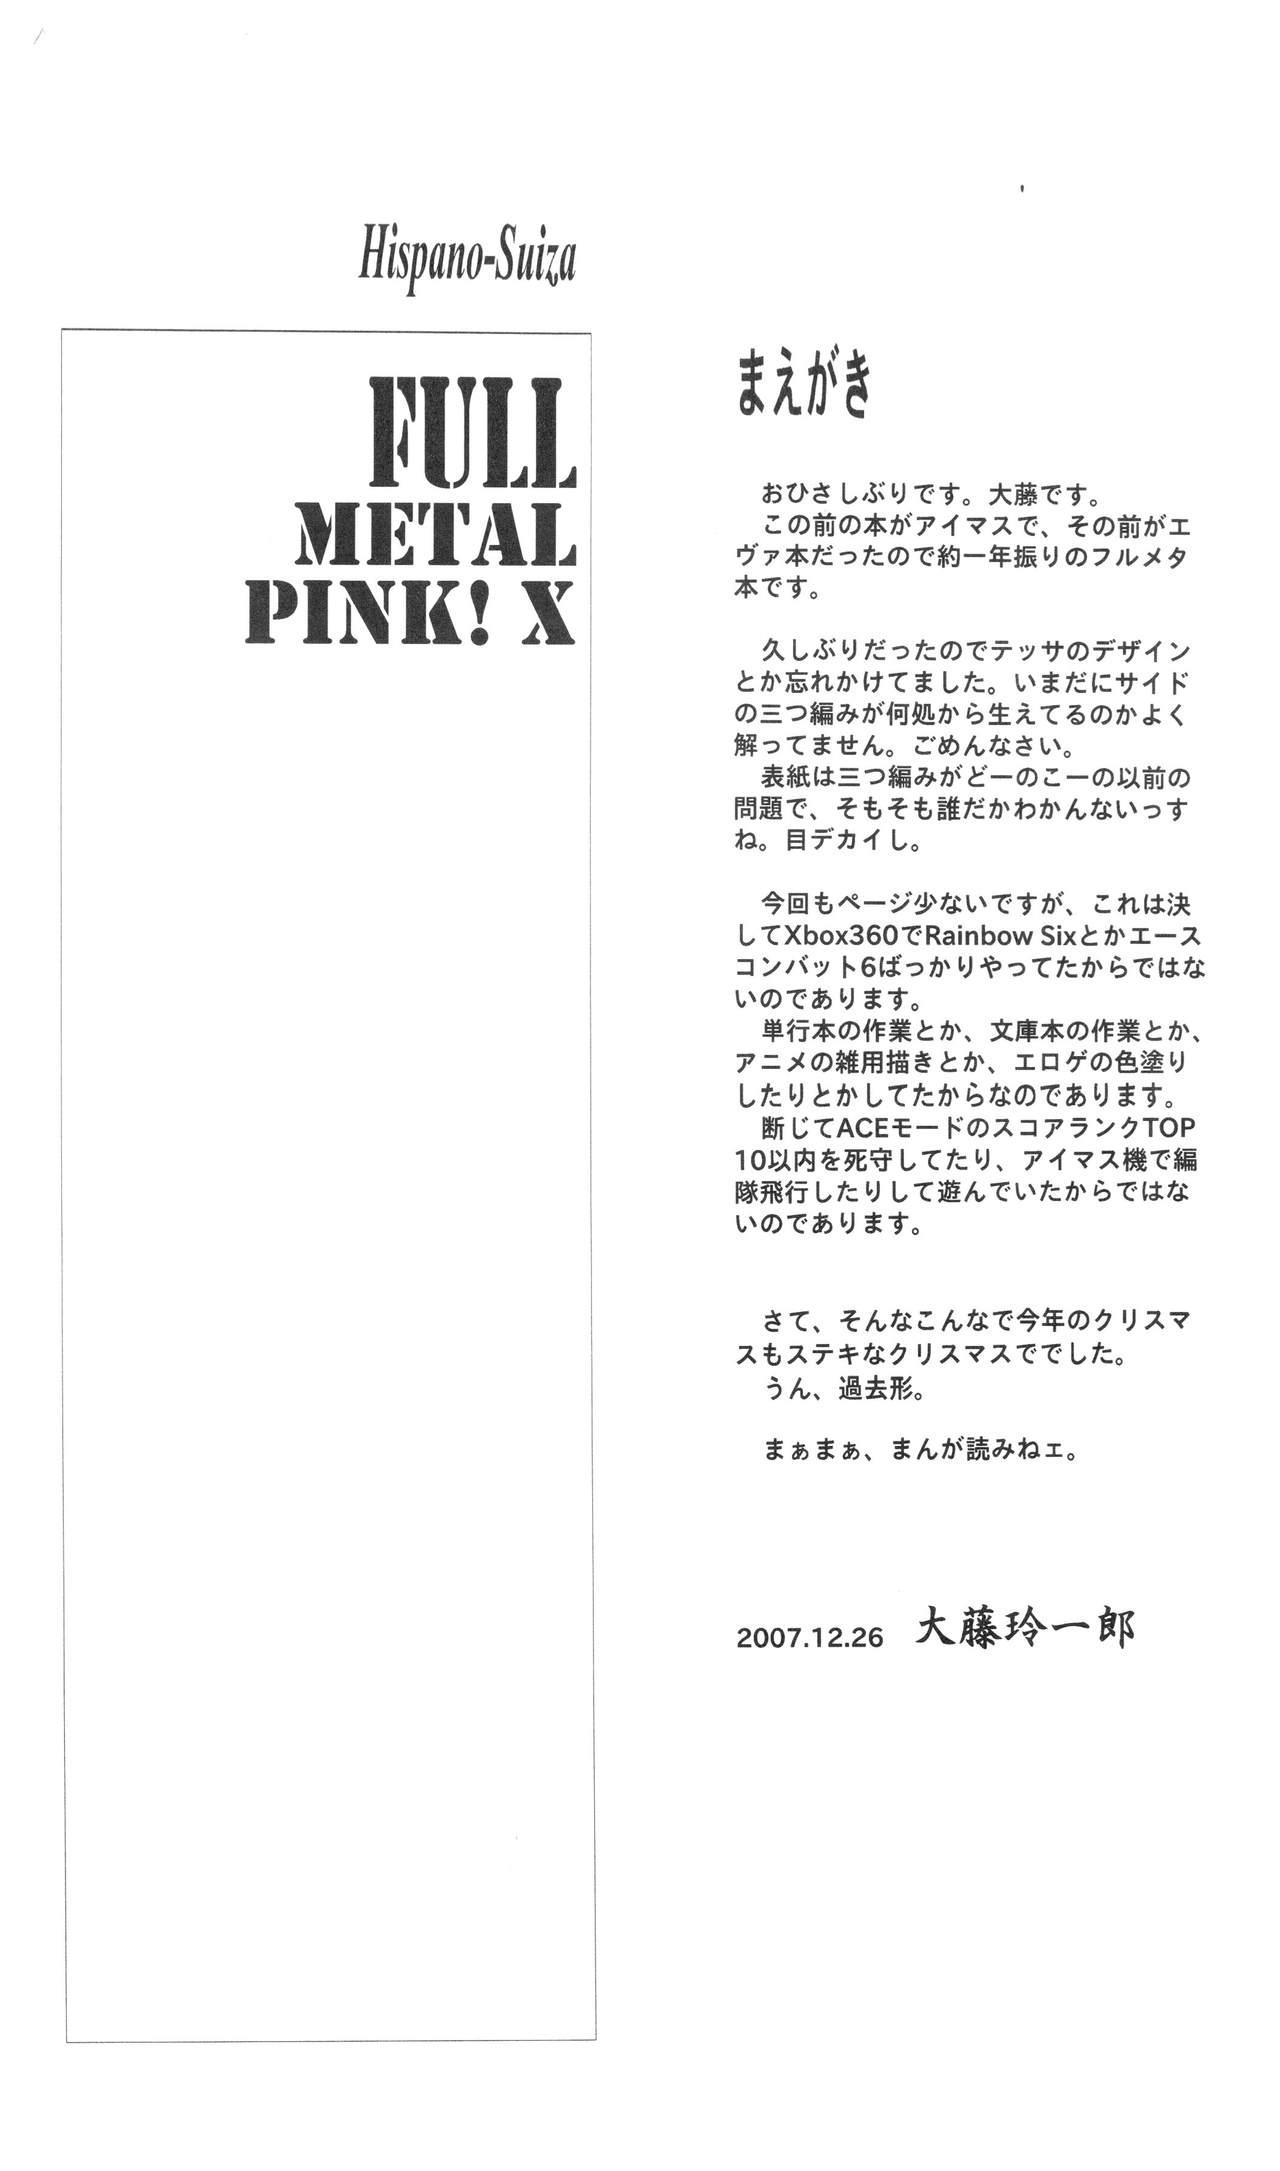 Full Metal Pink! X 1